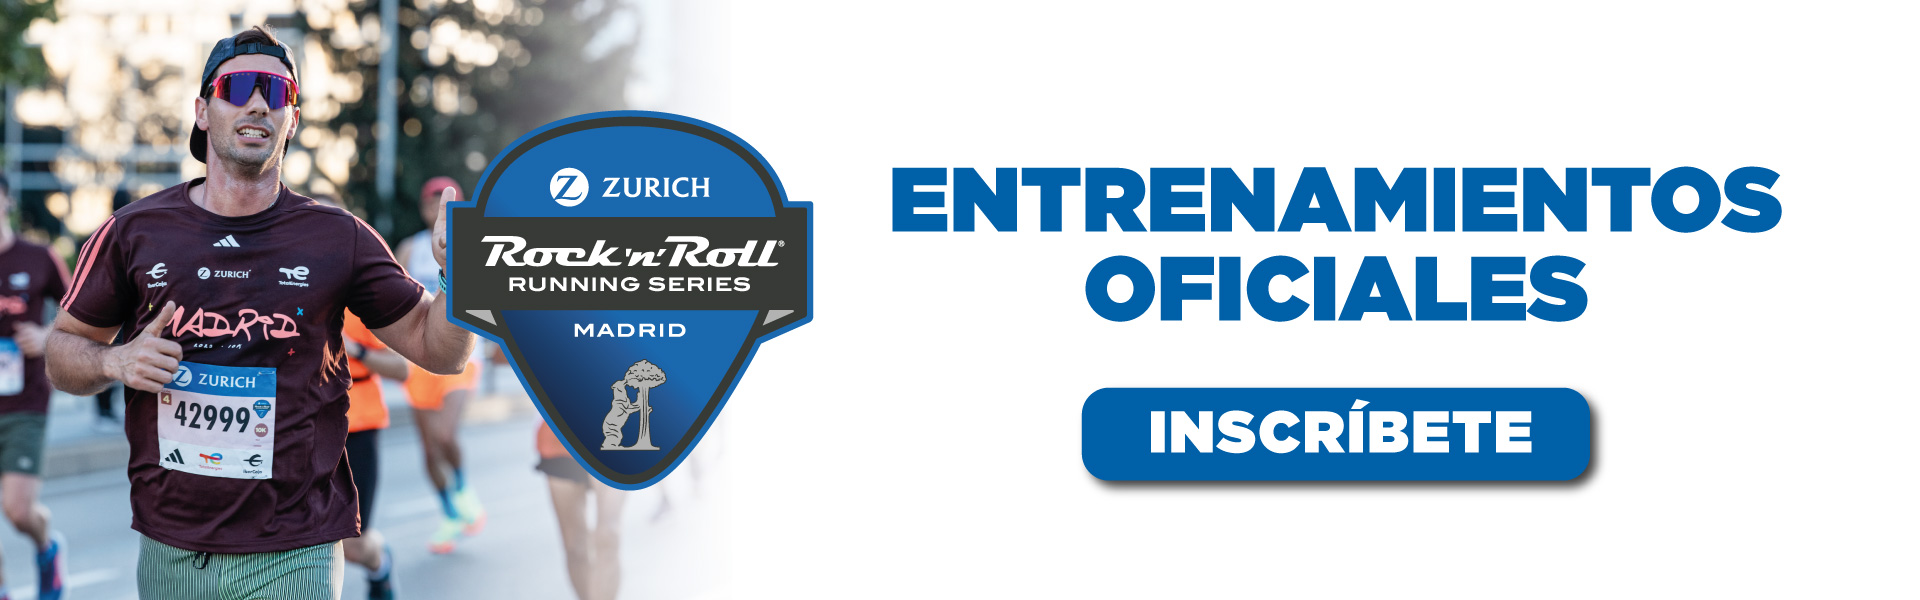 Entrenamientos oficiales del Zurich RocknRoll Running Series Madrid